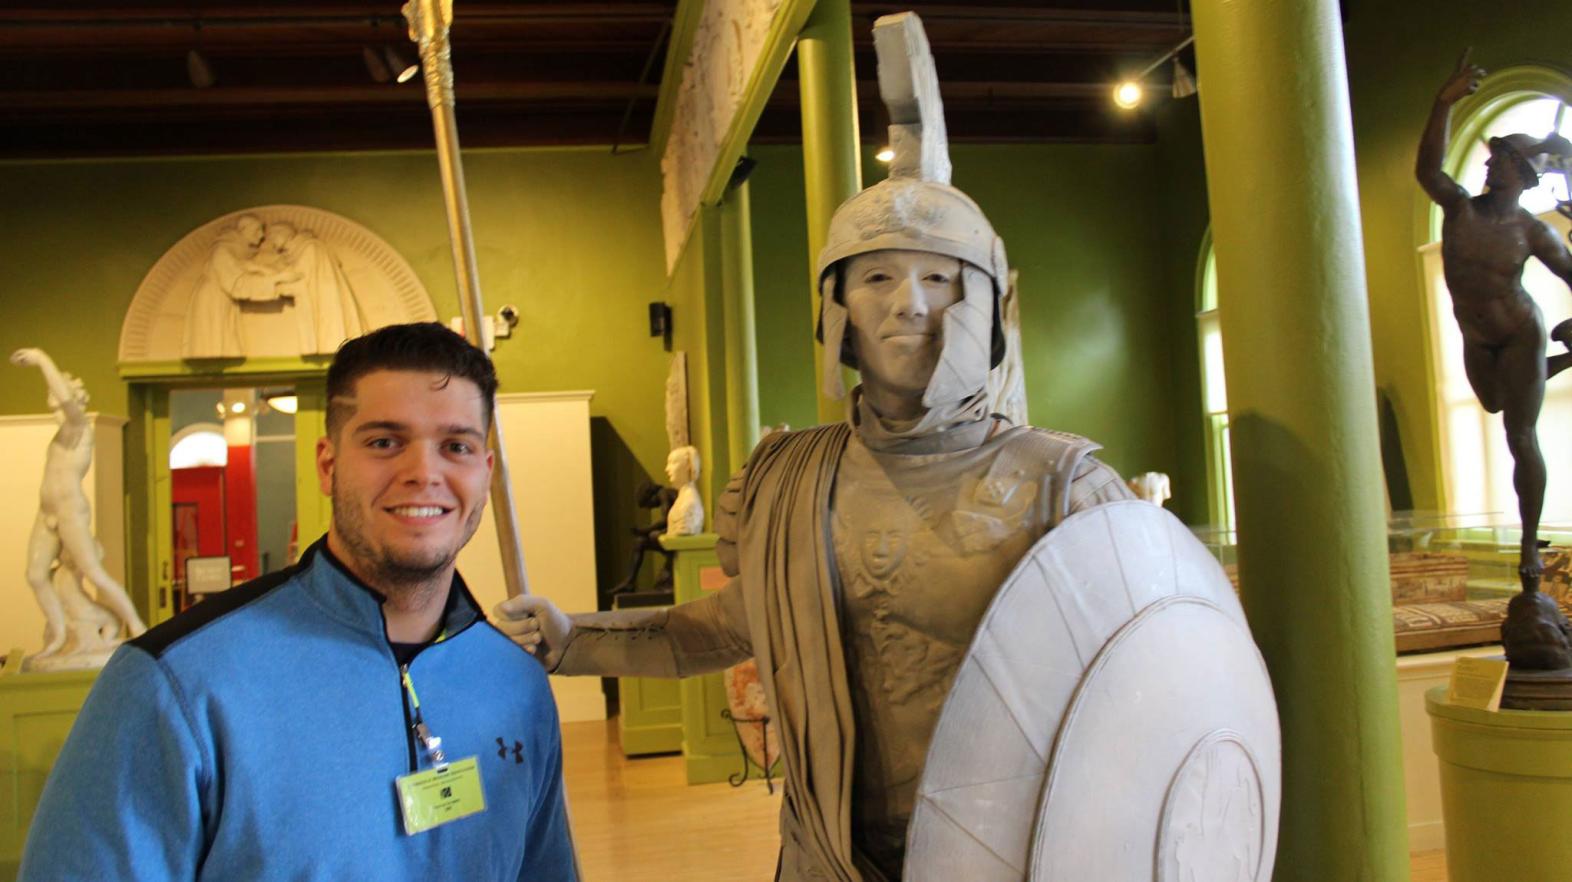 Hogan Tomkunas poses with a statue at his internship.